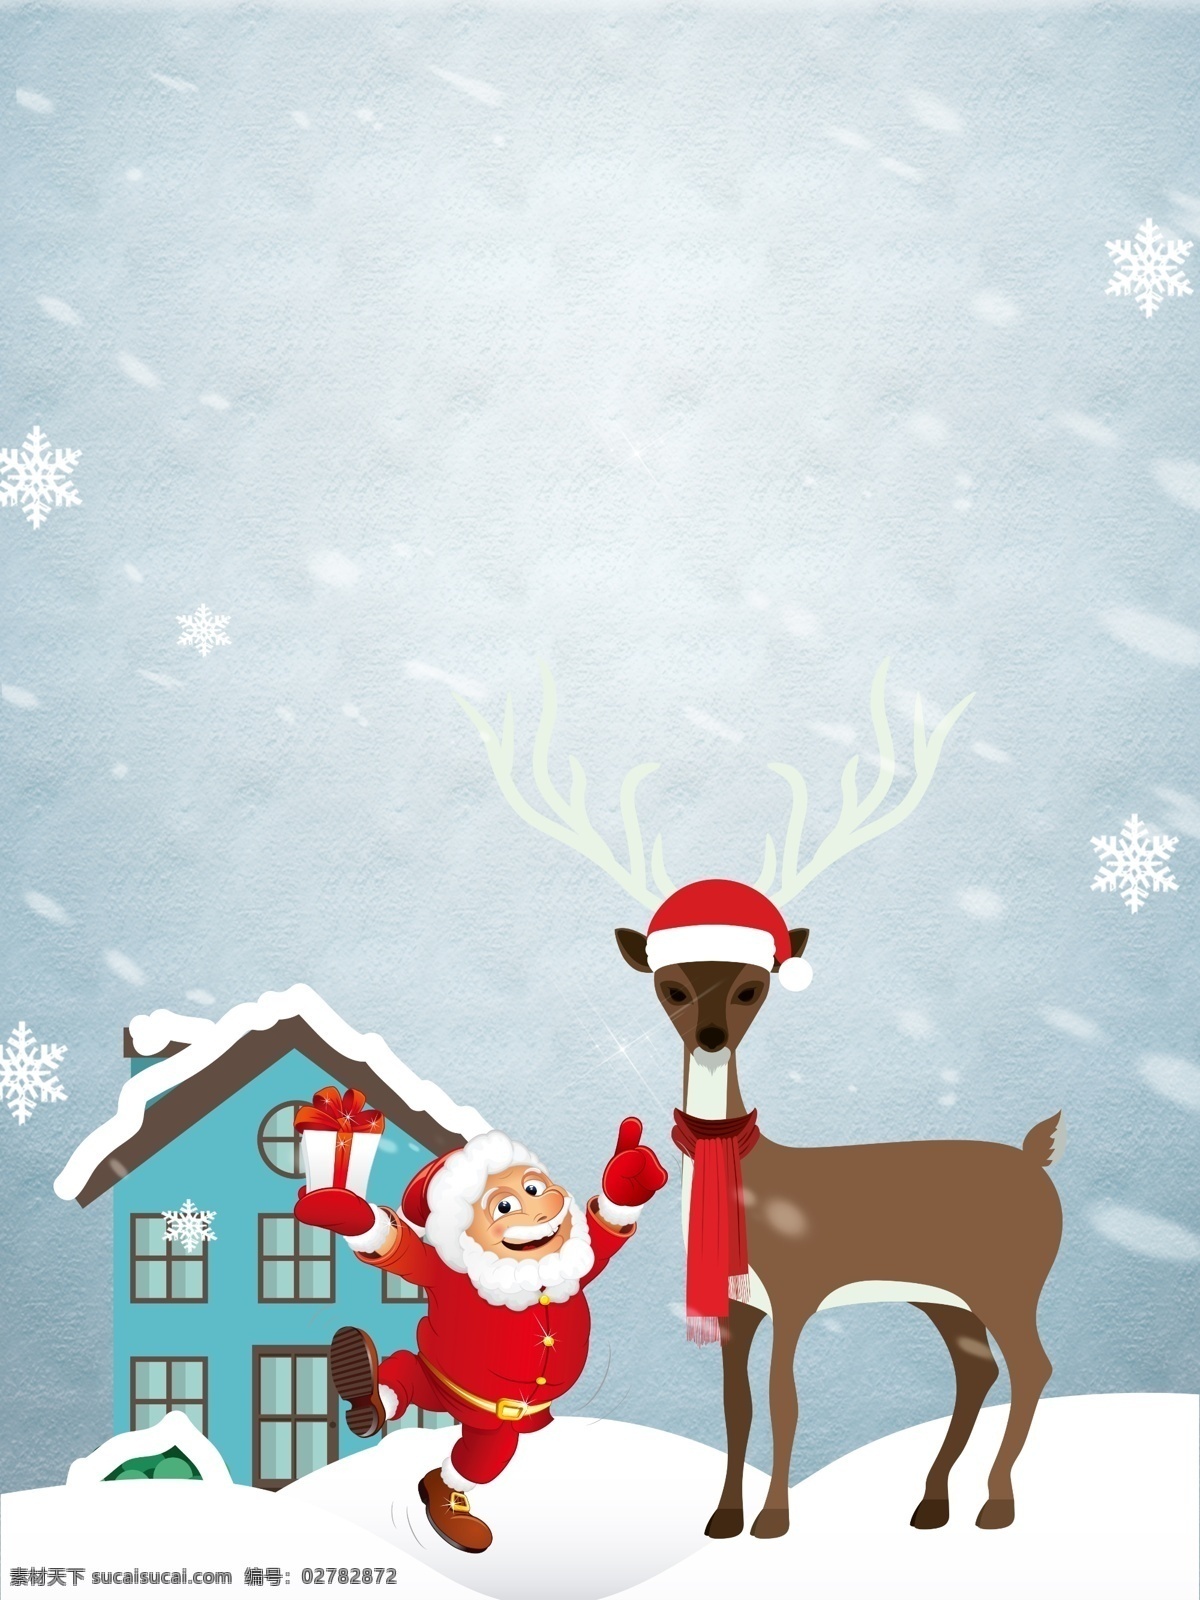 雪地 冬天 色 圣诞节 宣传 背景 蝴蝶结 雪花 浪漫 圣诞树 圣诞挂饰 圣诞老人 圣诞海报 圣诞快乐 圣诞狂欢 新年